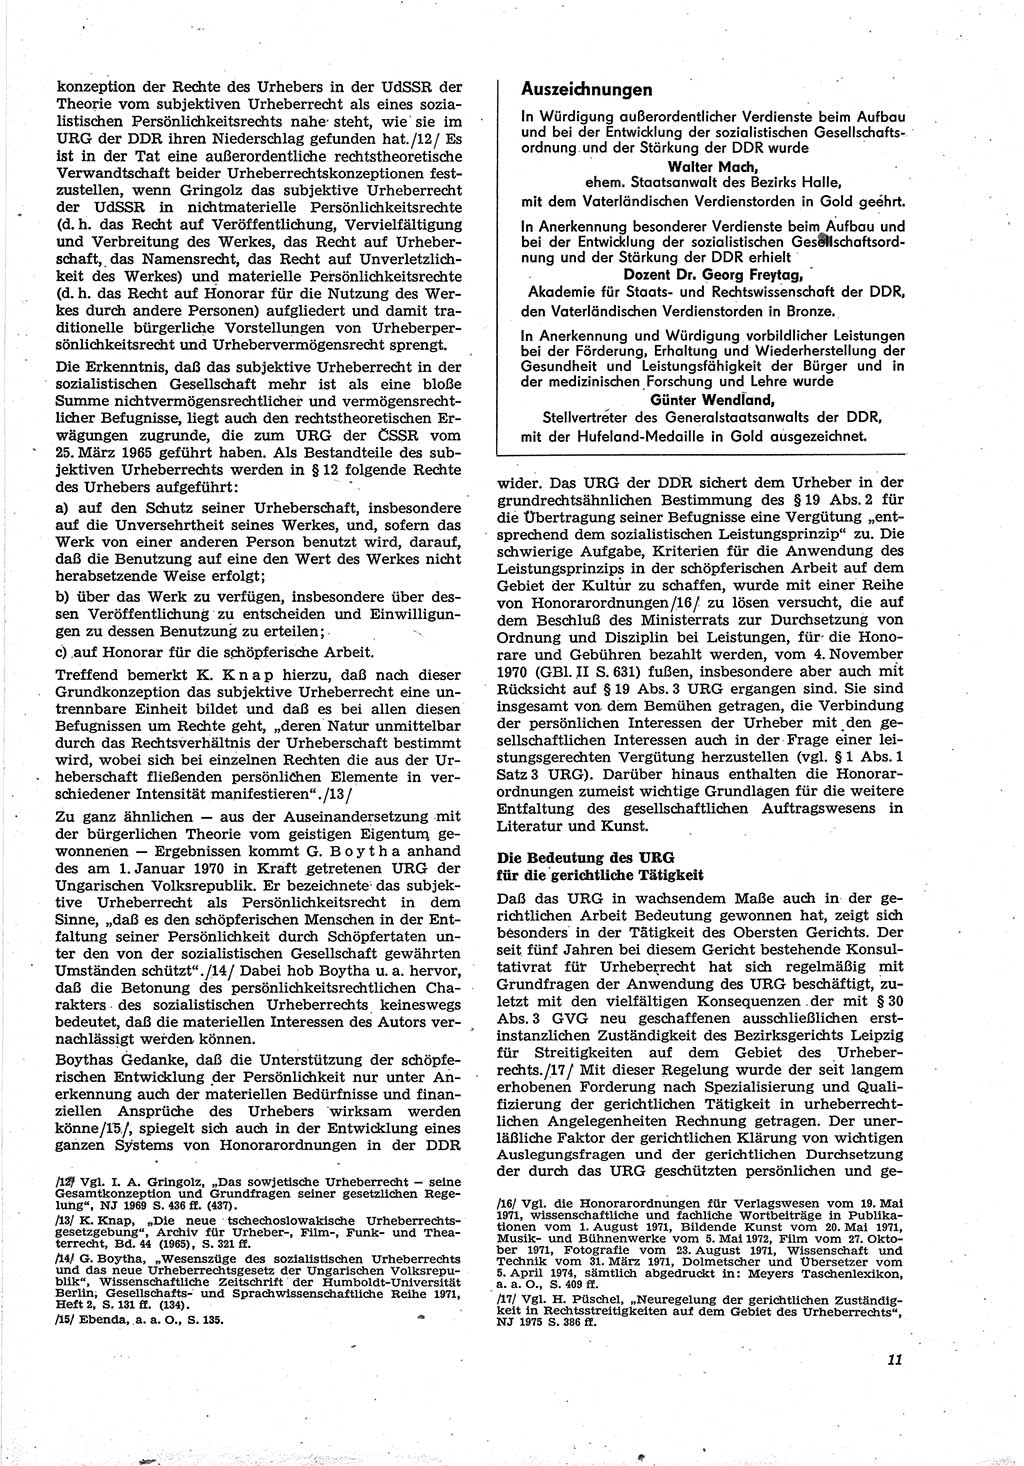 Neue Justiz (NJ), Zeitschrift für Recht und Rechtswissenschaft [Deutsche Demokratische Republik (DDR)], 30. Jahrgang 1976, Seite 11 (NJ DDR 1976, S. 11)